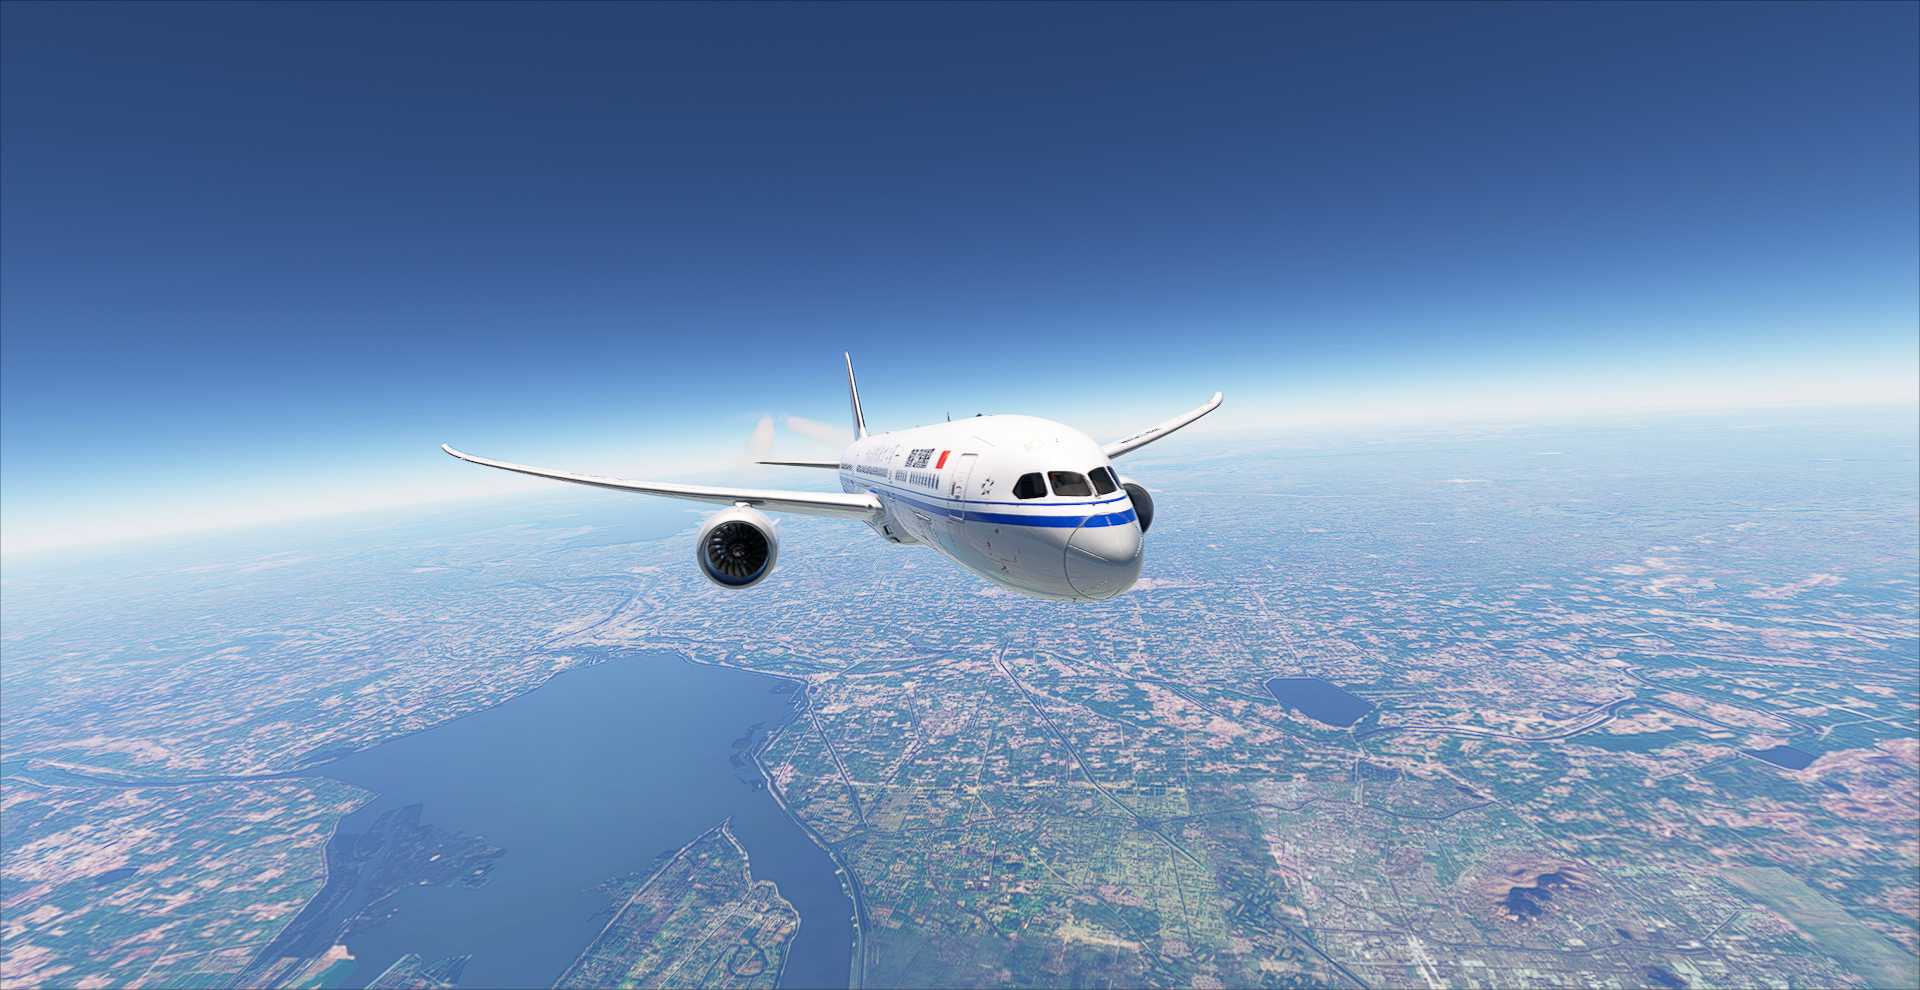 【MFS2020】合集-初试微软模拟飞行-1334 